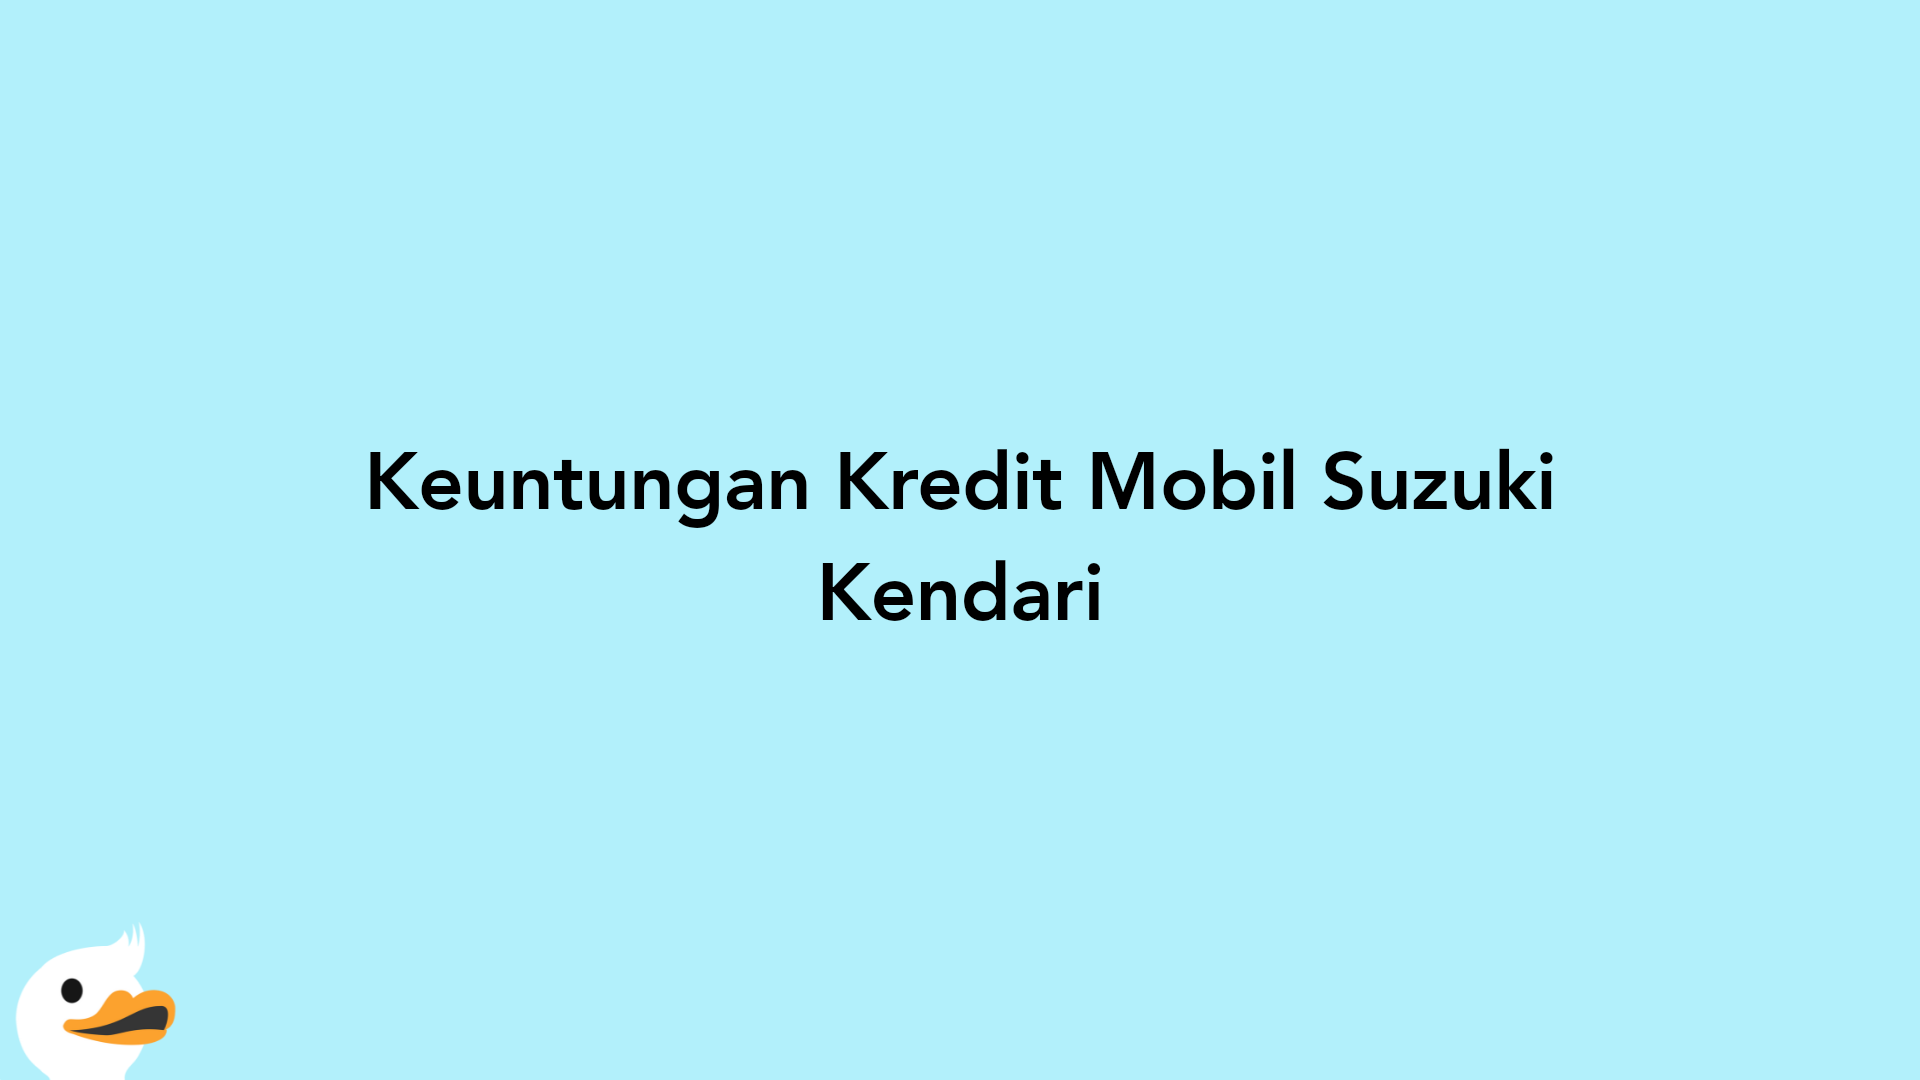 Keuntungan Kredit Mobil Suzuki Kendari